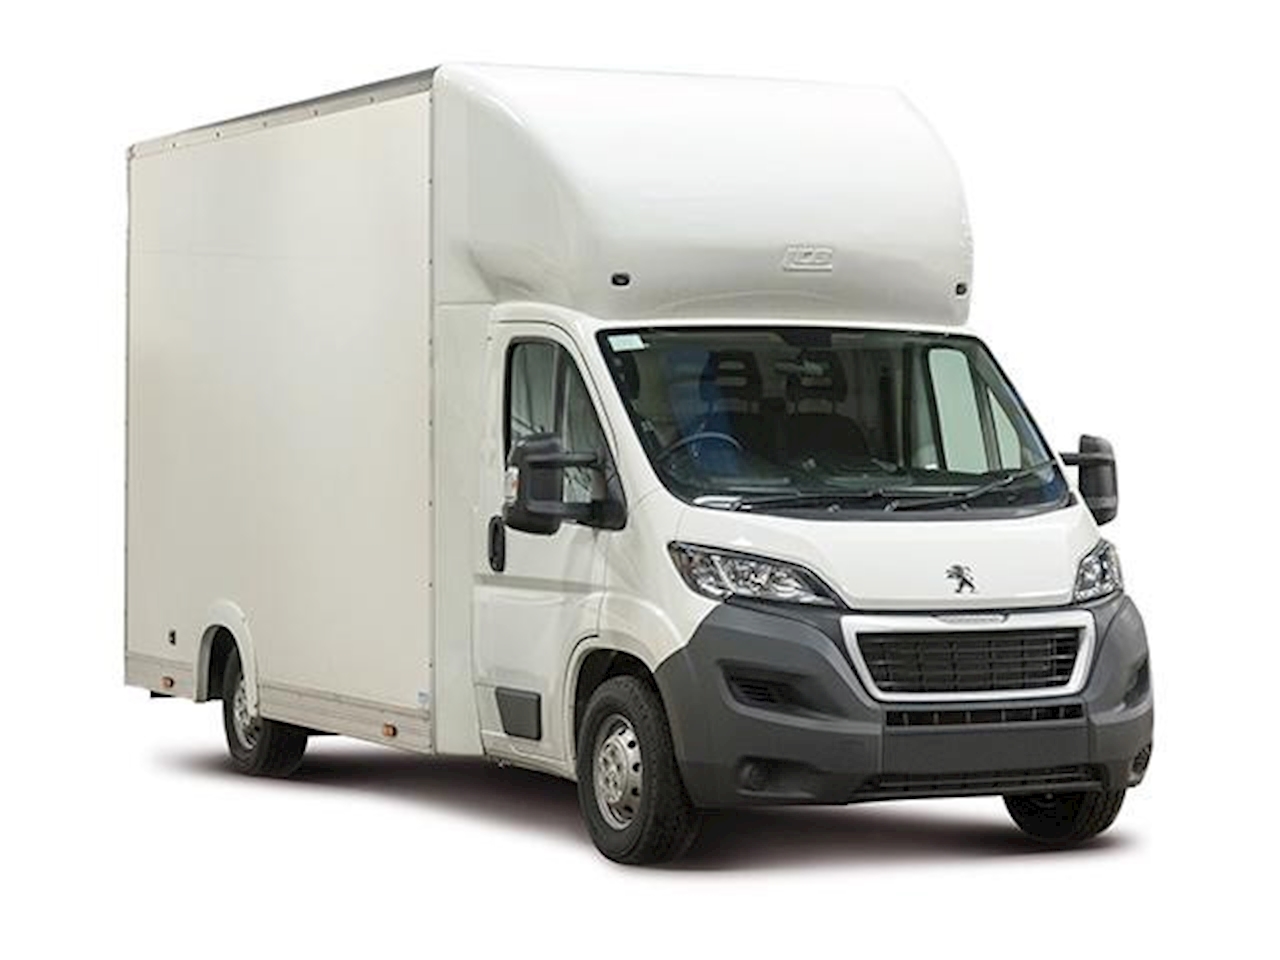 low loader vans for sale uk